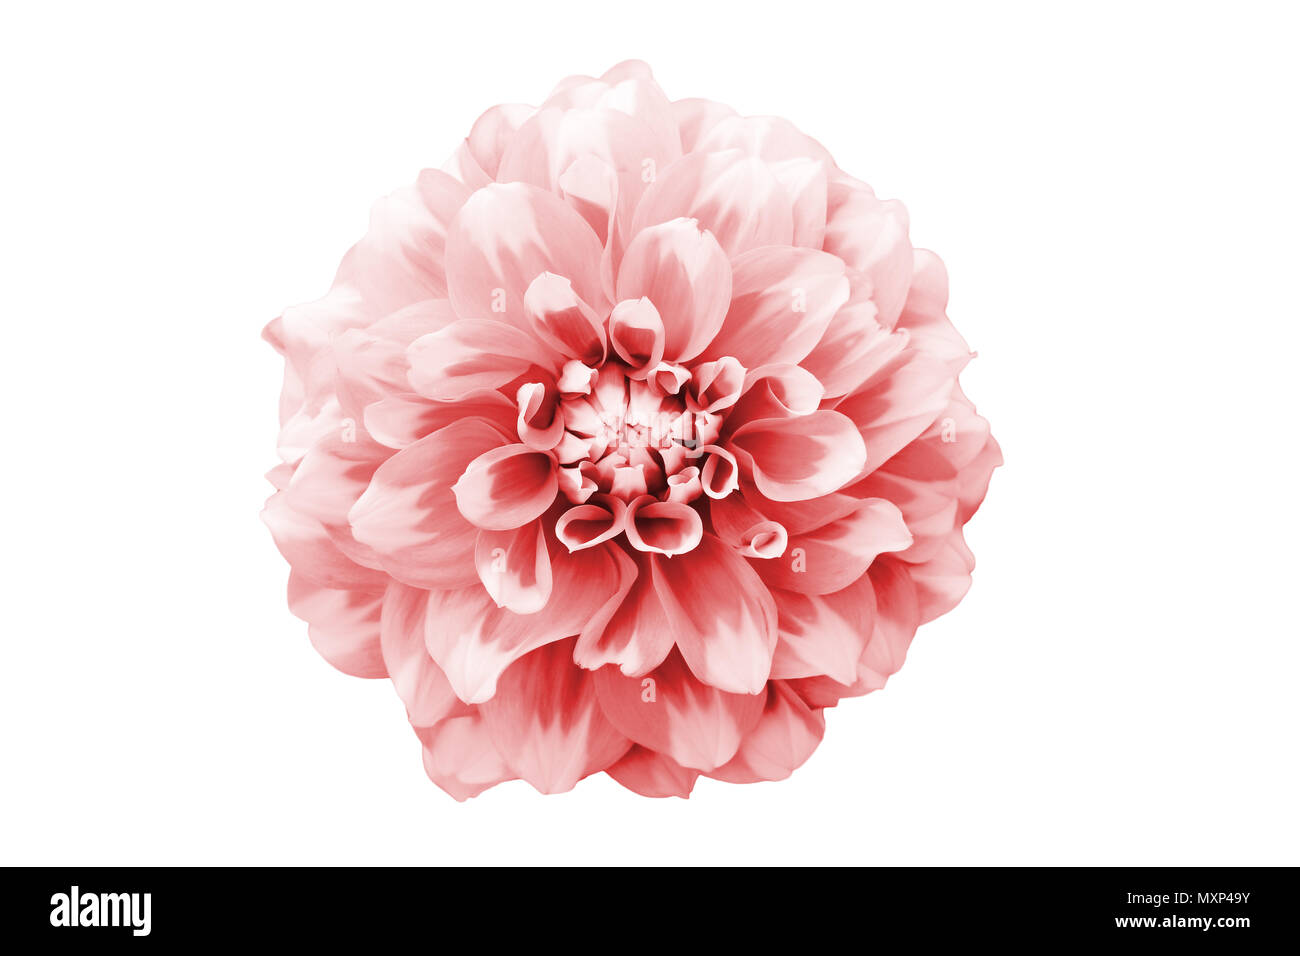 Rosa und Weiße Dahlie Blume Makro Foto. Bild Farbe getonte Betonung der Textur und komplizierte geometrische Muster. Blume von oben perspecti Stockfoto